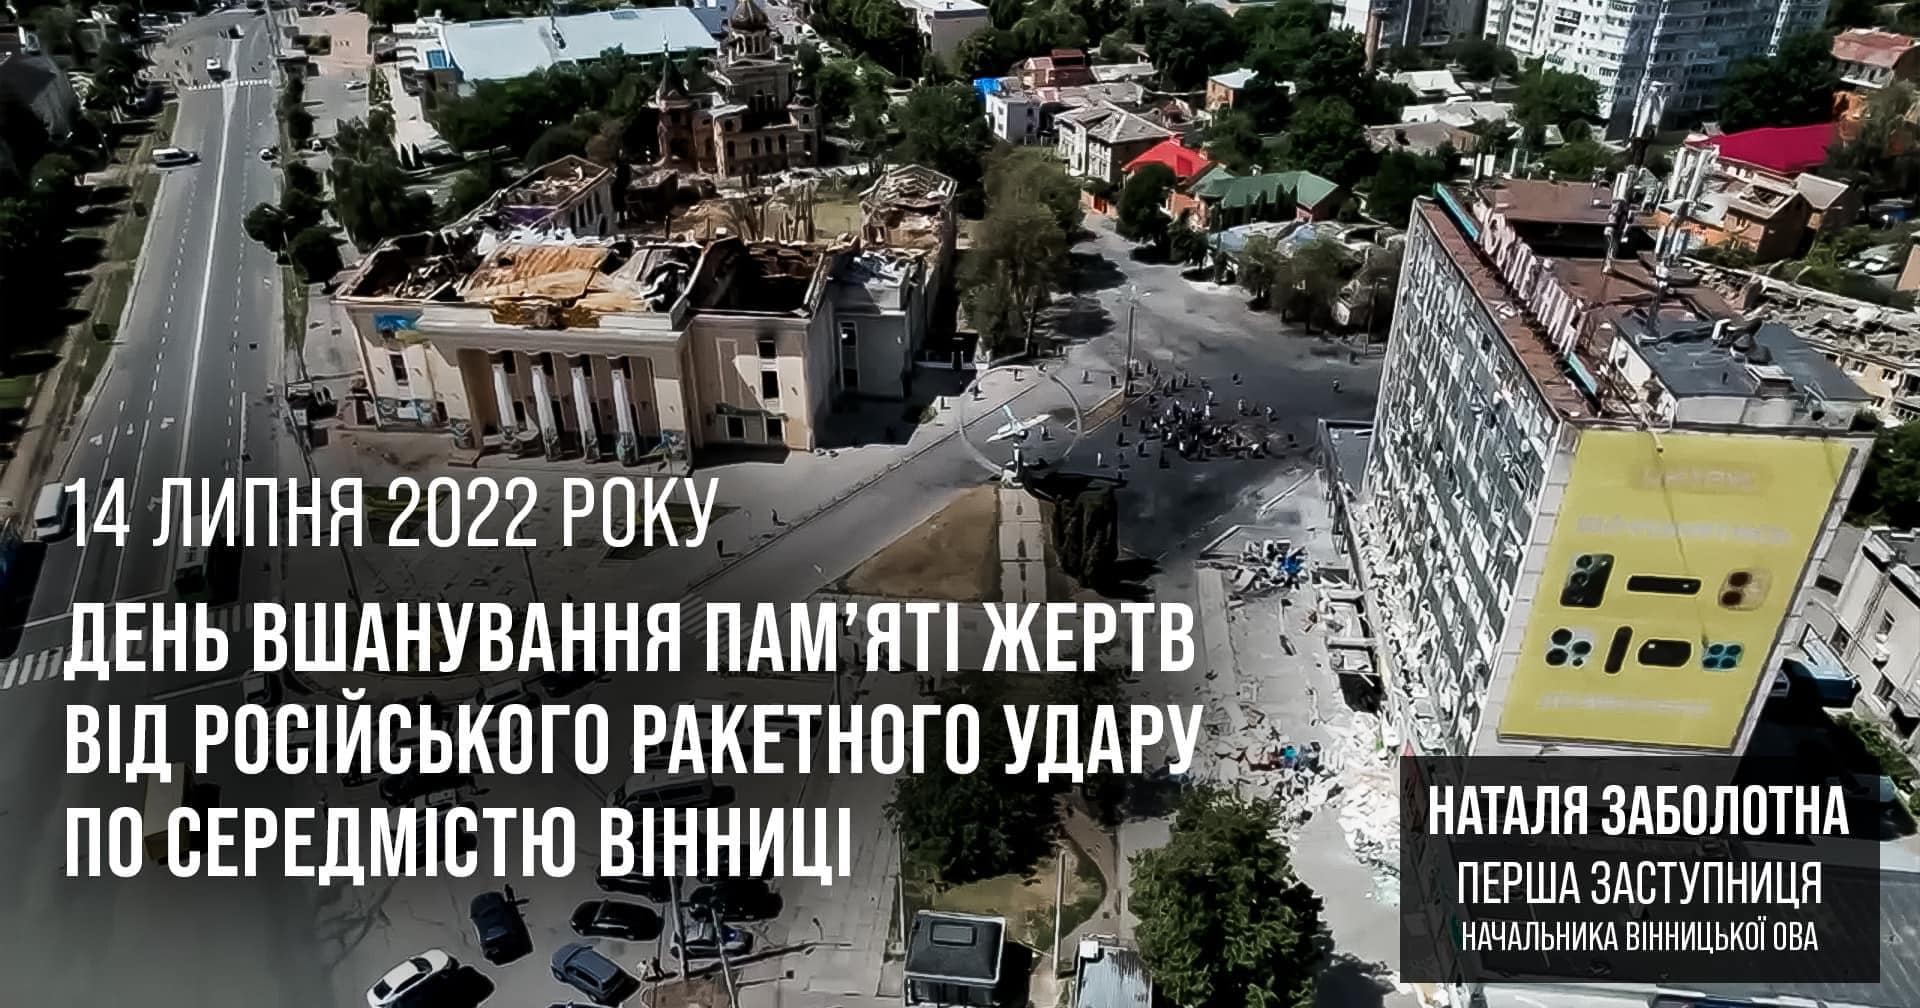 День вшанування пам'яті жертв від російського ракетного удару по середмістю Вінниці